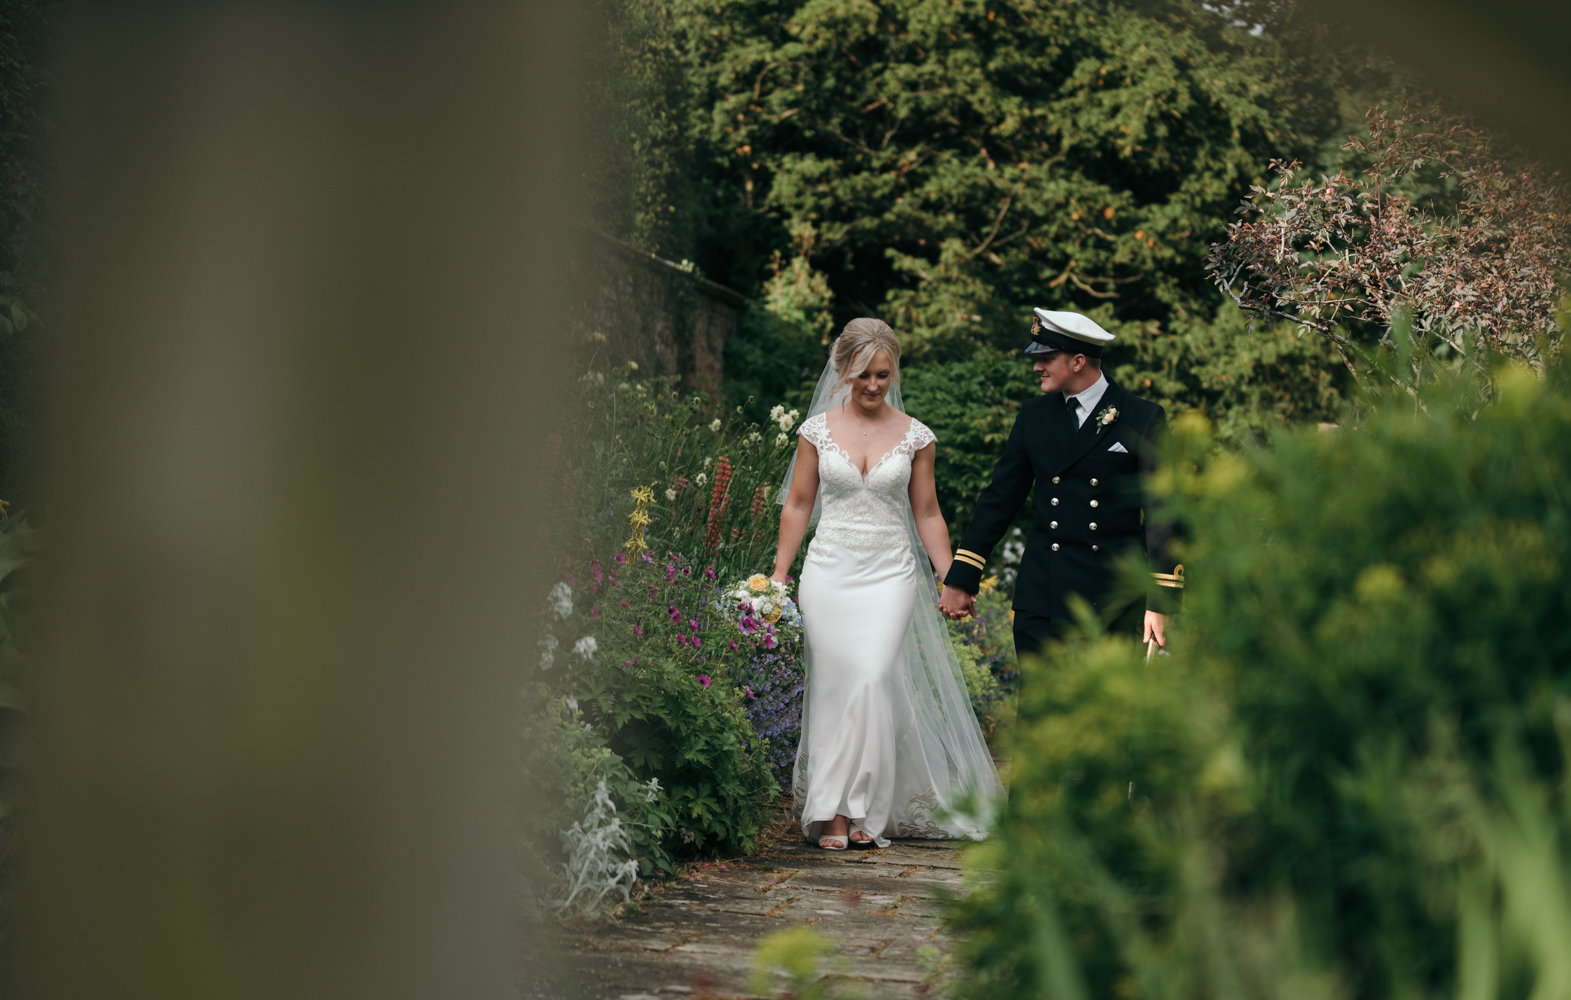 The bride and groom walking in the secret garden